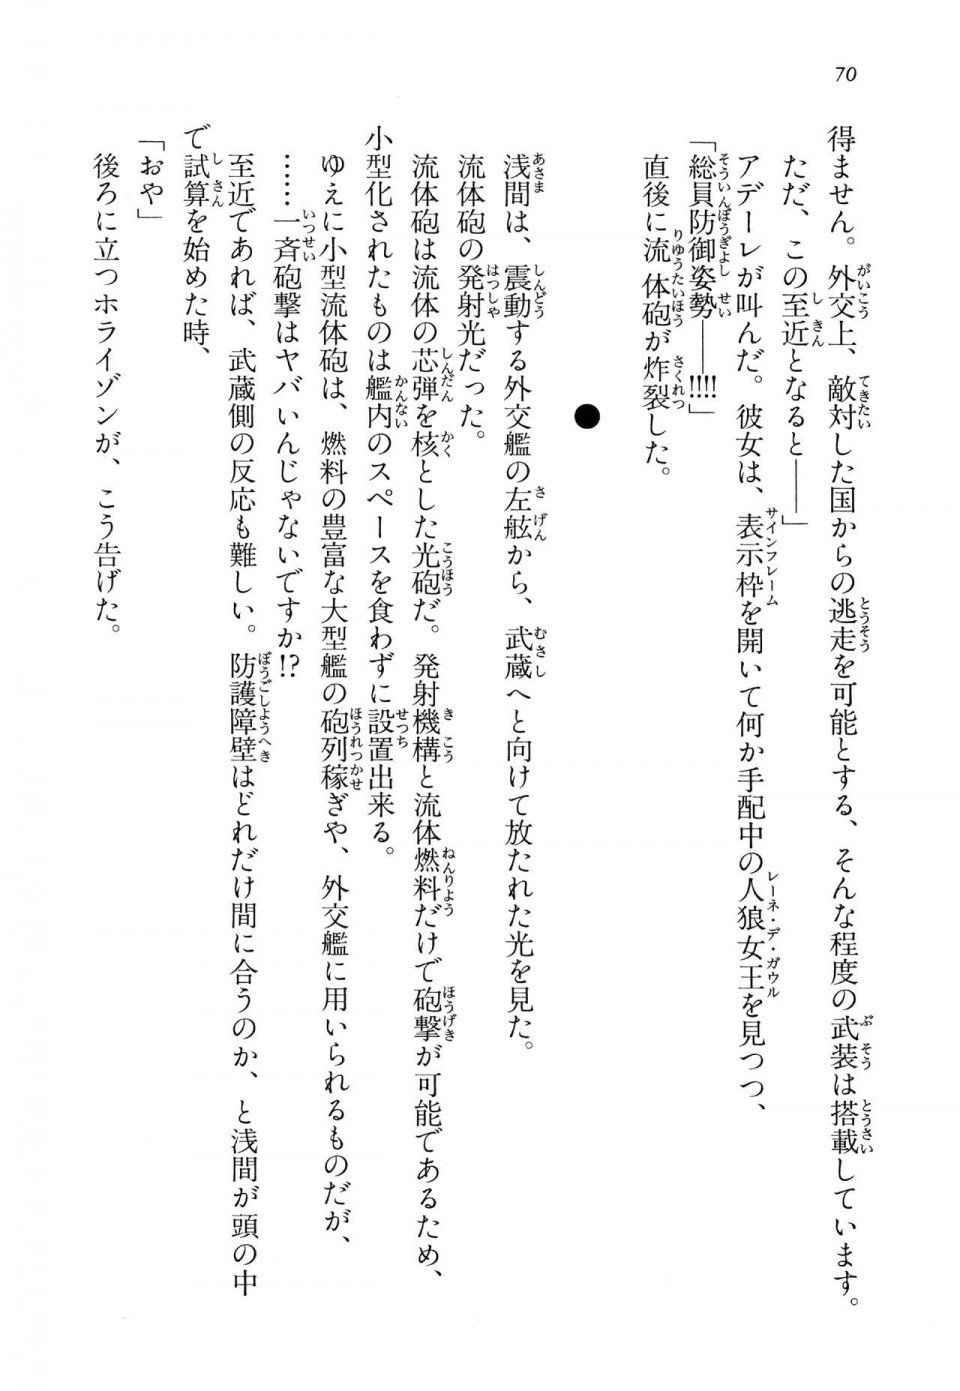 Kyoukai Senjou no Horizon LN Vol 14(6B) - Photo #70